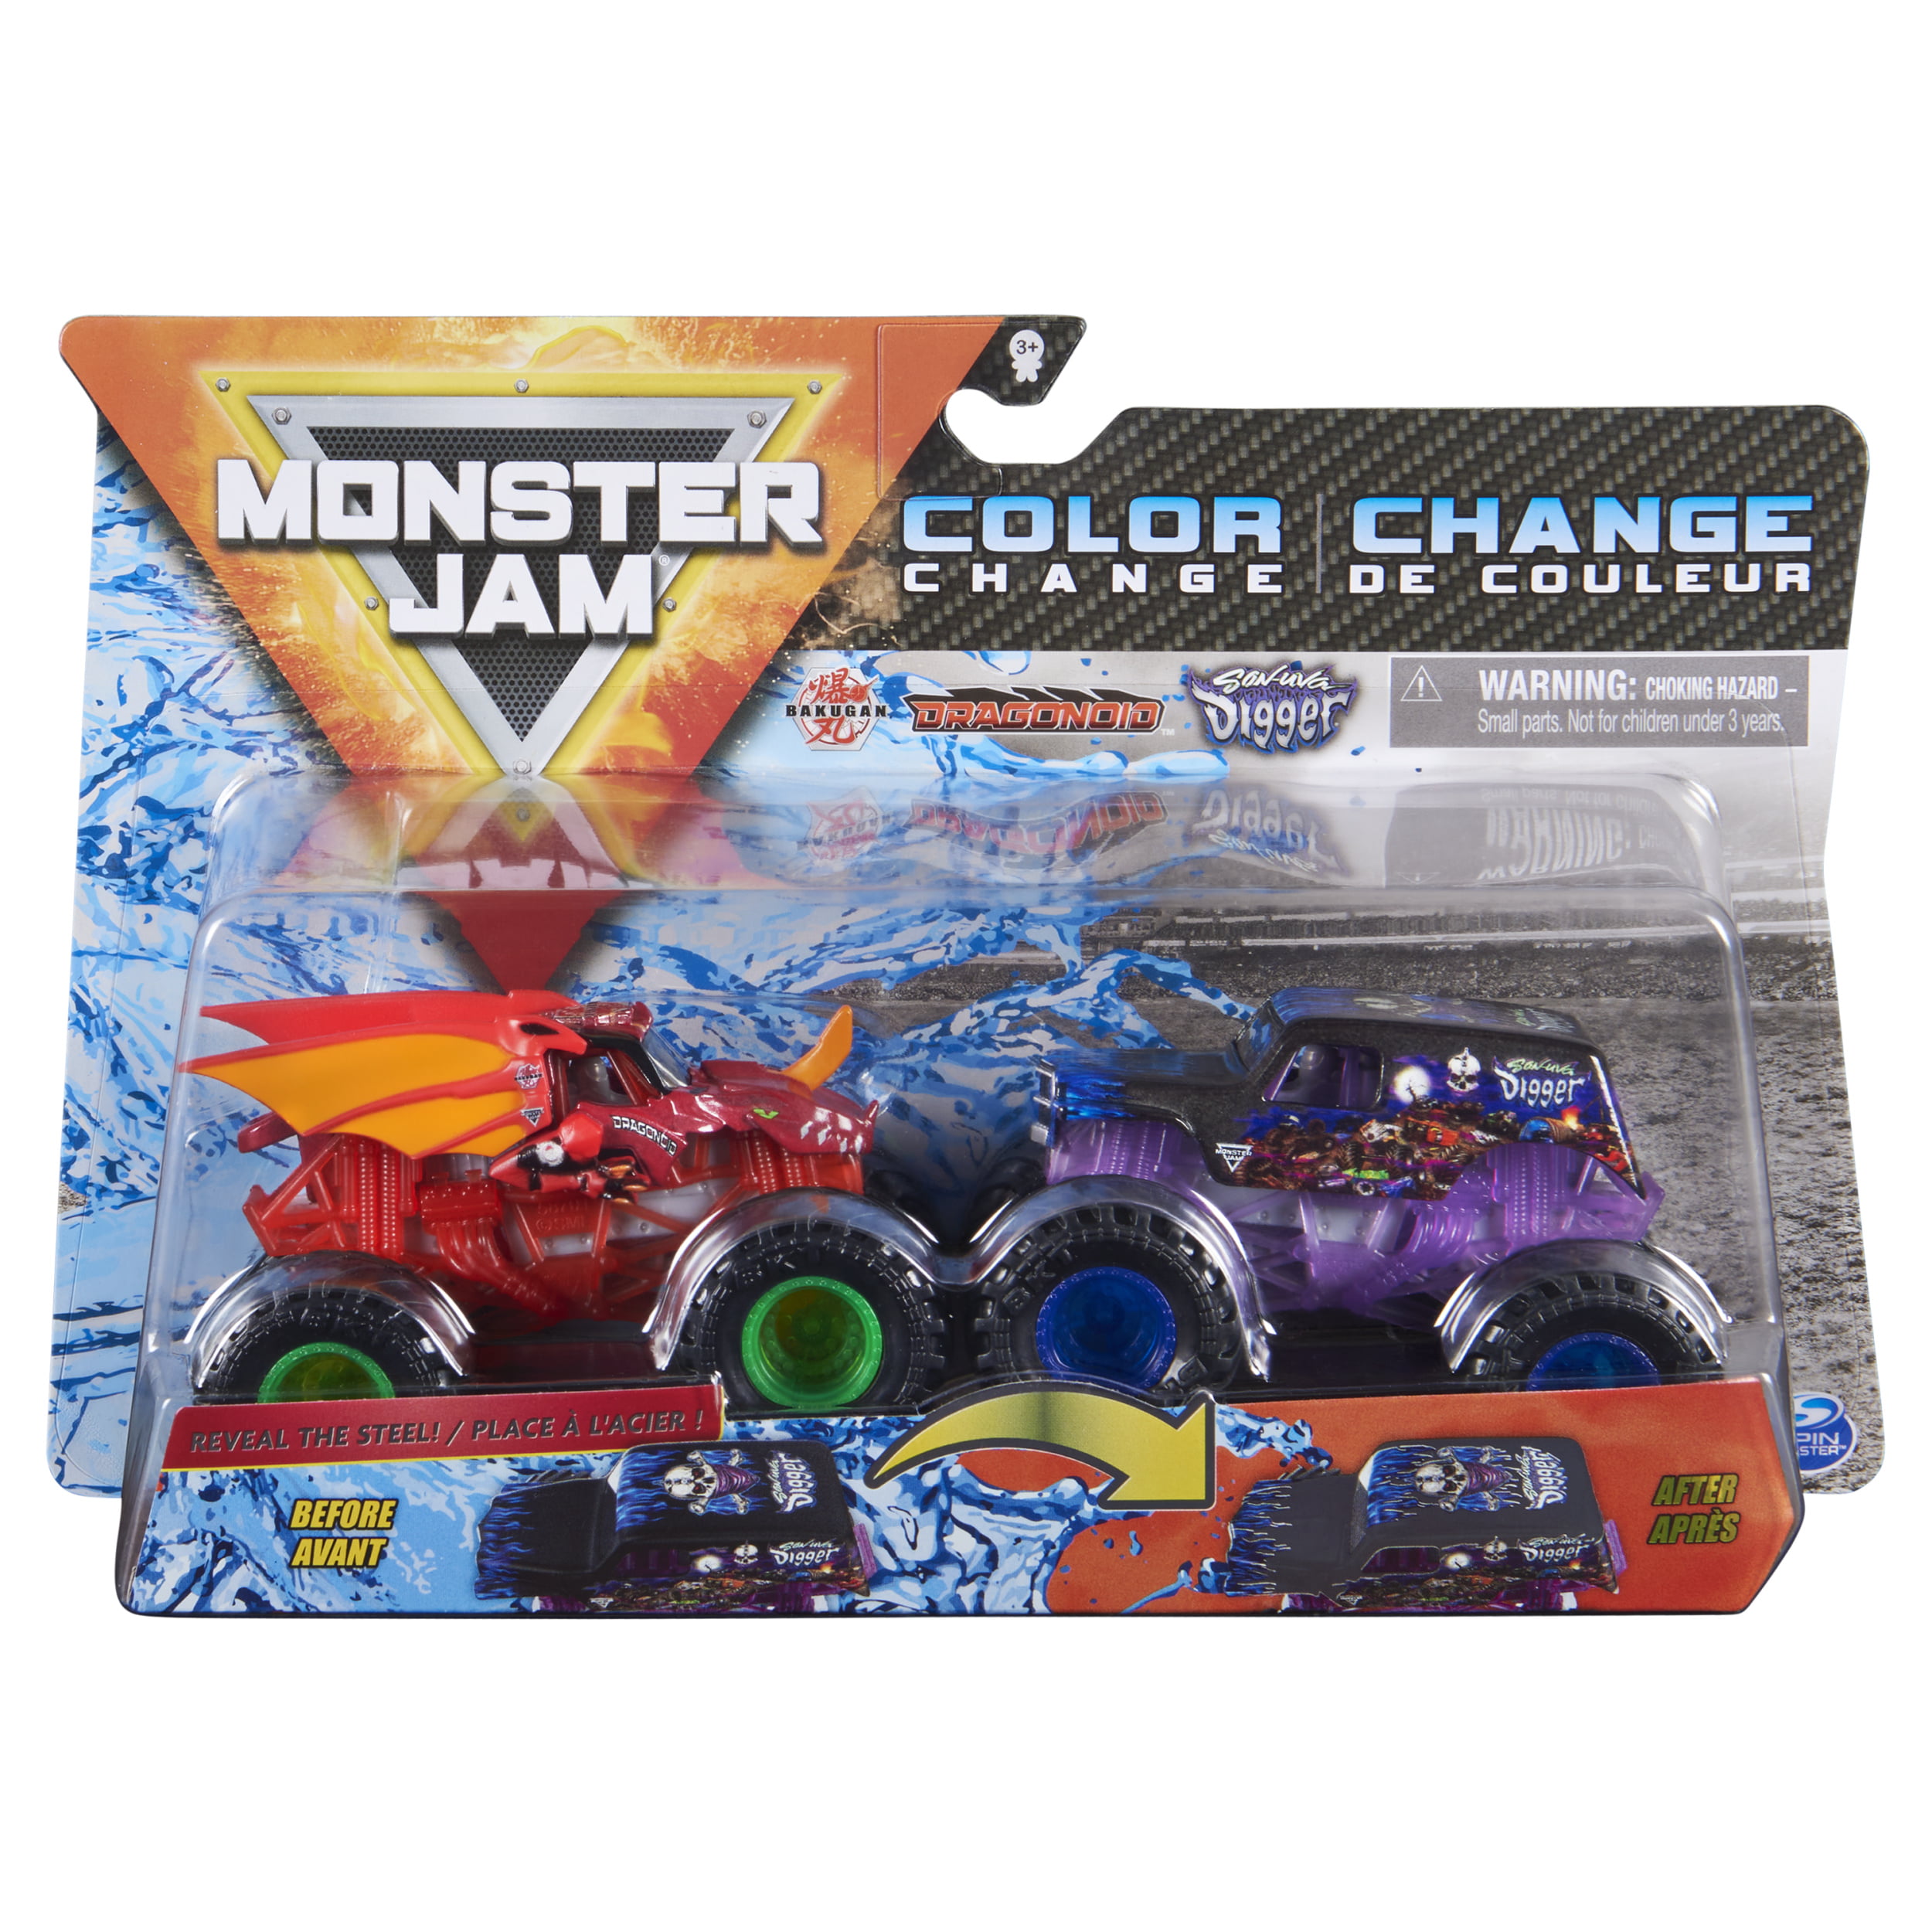 Monster jam color change lenovo thinkpad t460 uk